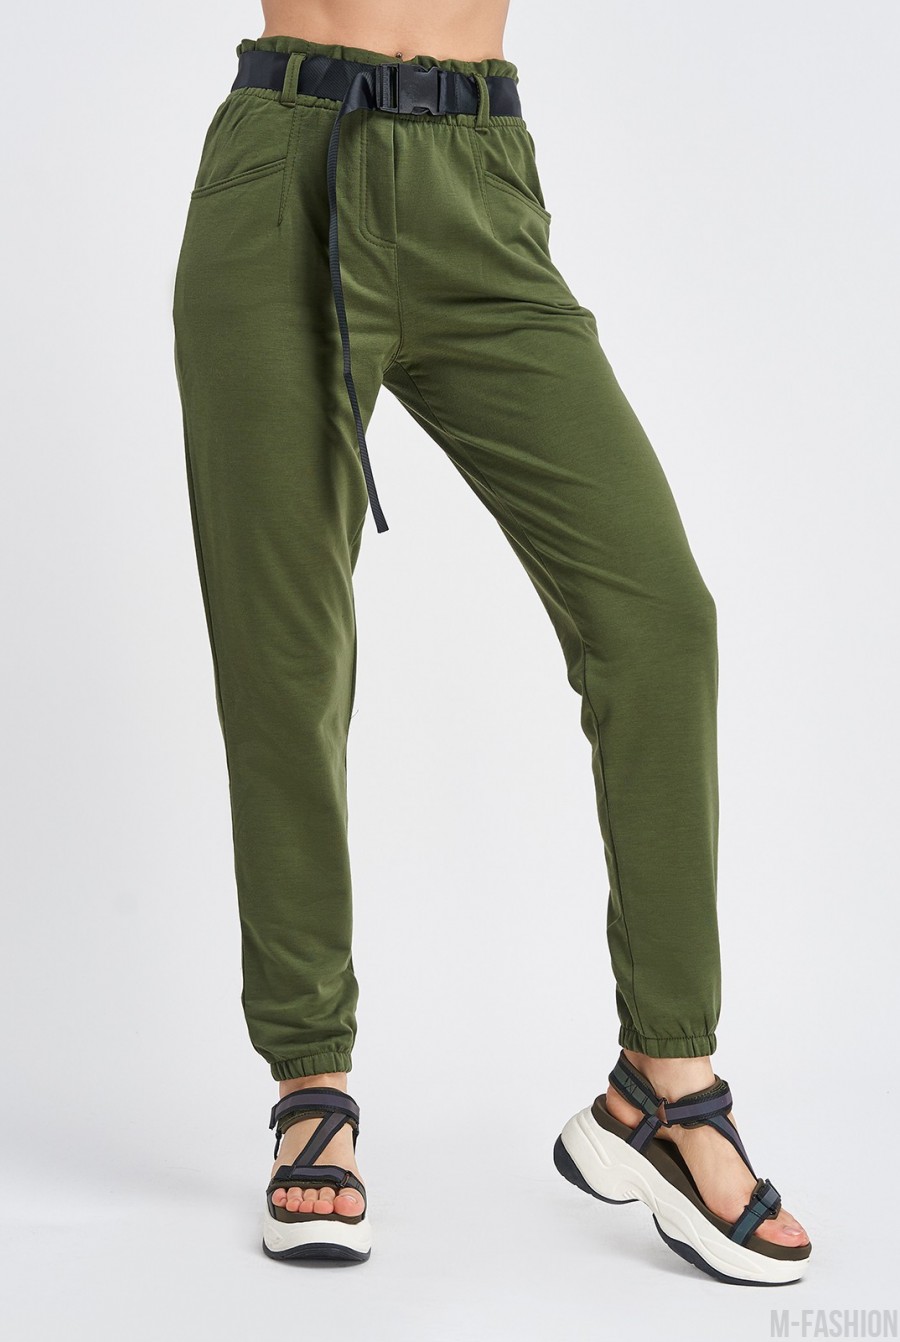 Трикотажные брюки цвета хаки с высокой посадкой - Фото 1